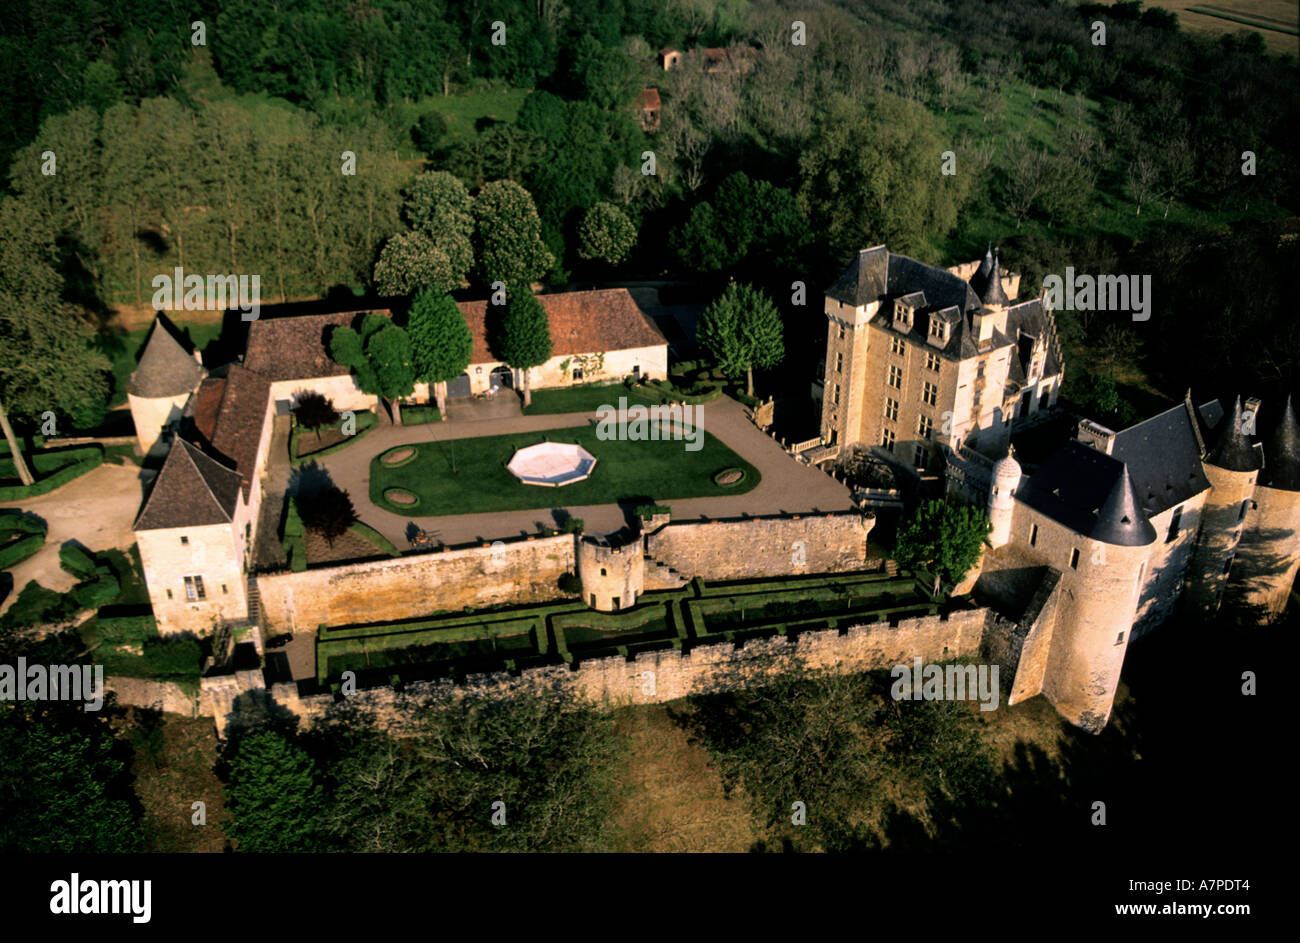 France, Dordogne, a private castle in Perigord (aerial view) Stock Photo